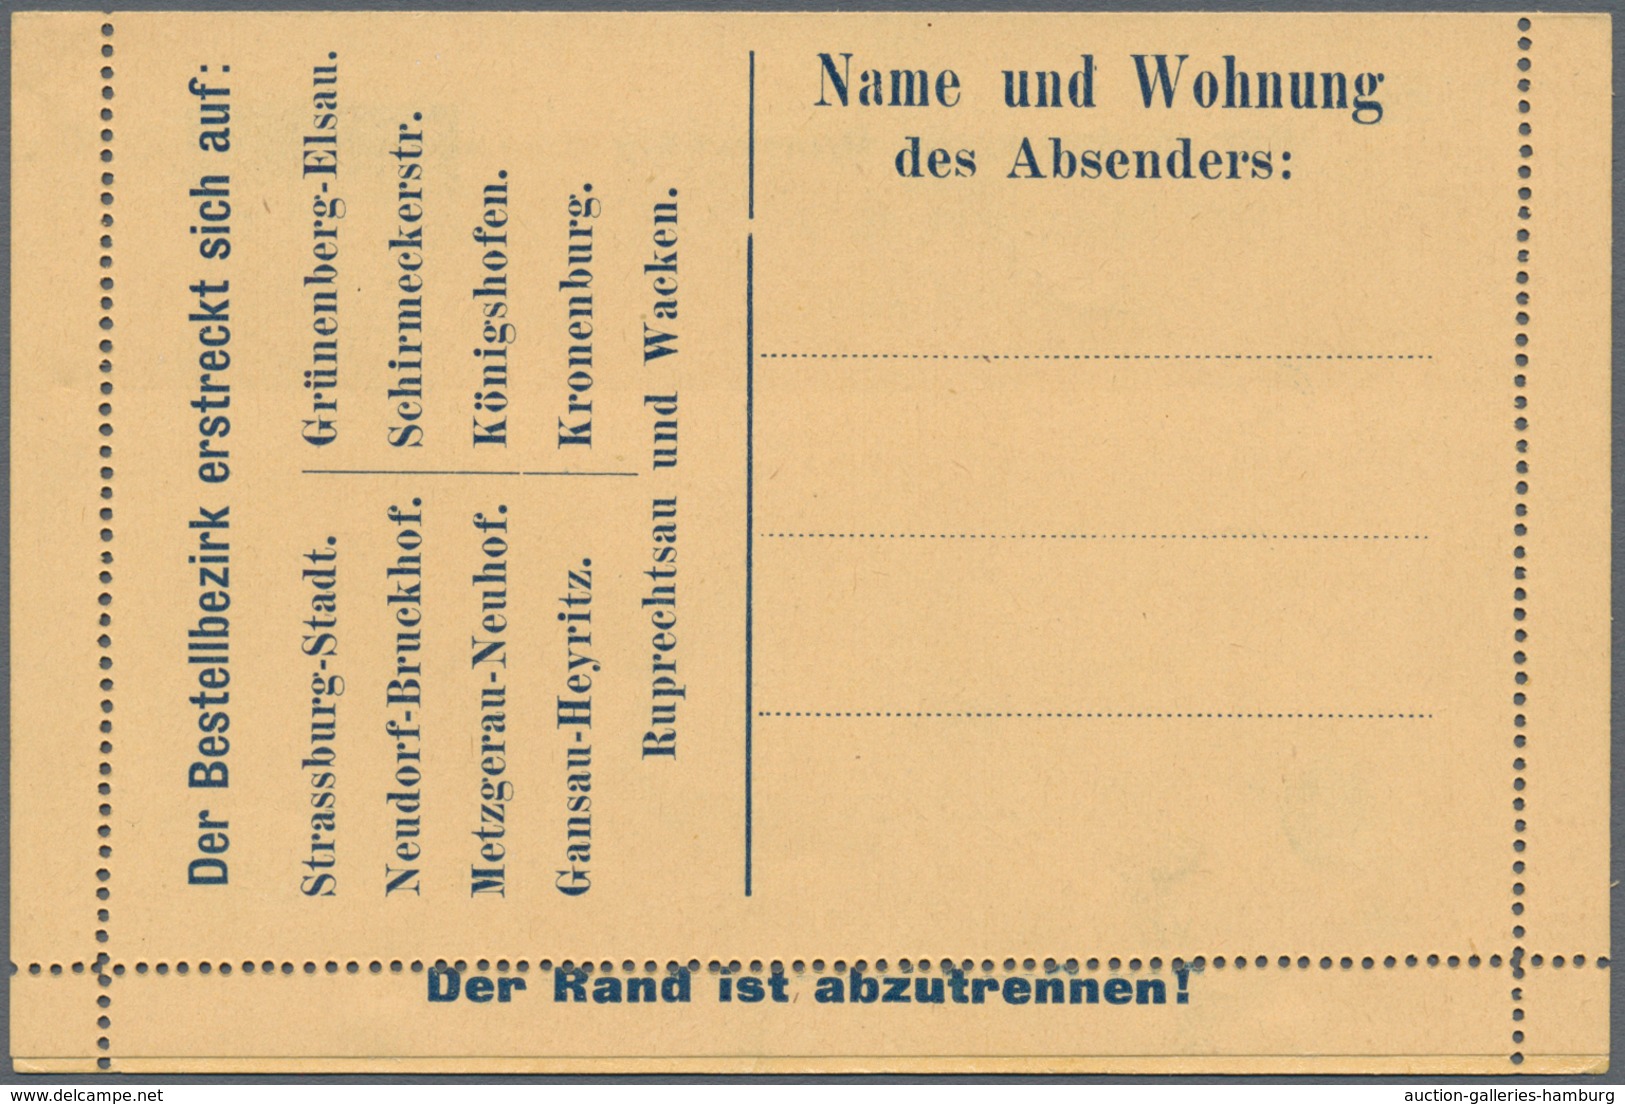 Deutsches Reich - Privatpost (Stadtpost): Strassburg, 1891/92: 5 Kartenbriefe, nicht gelaufen, selte